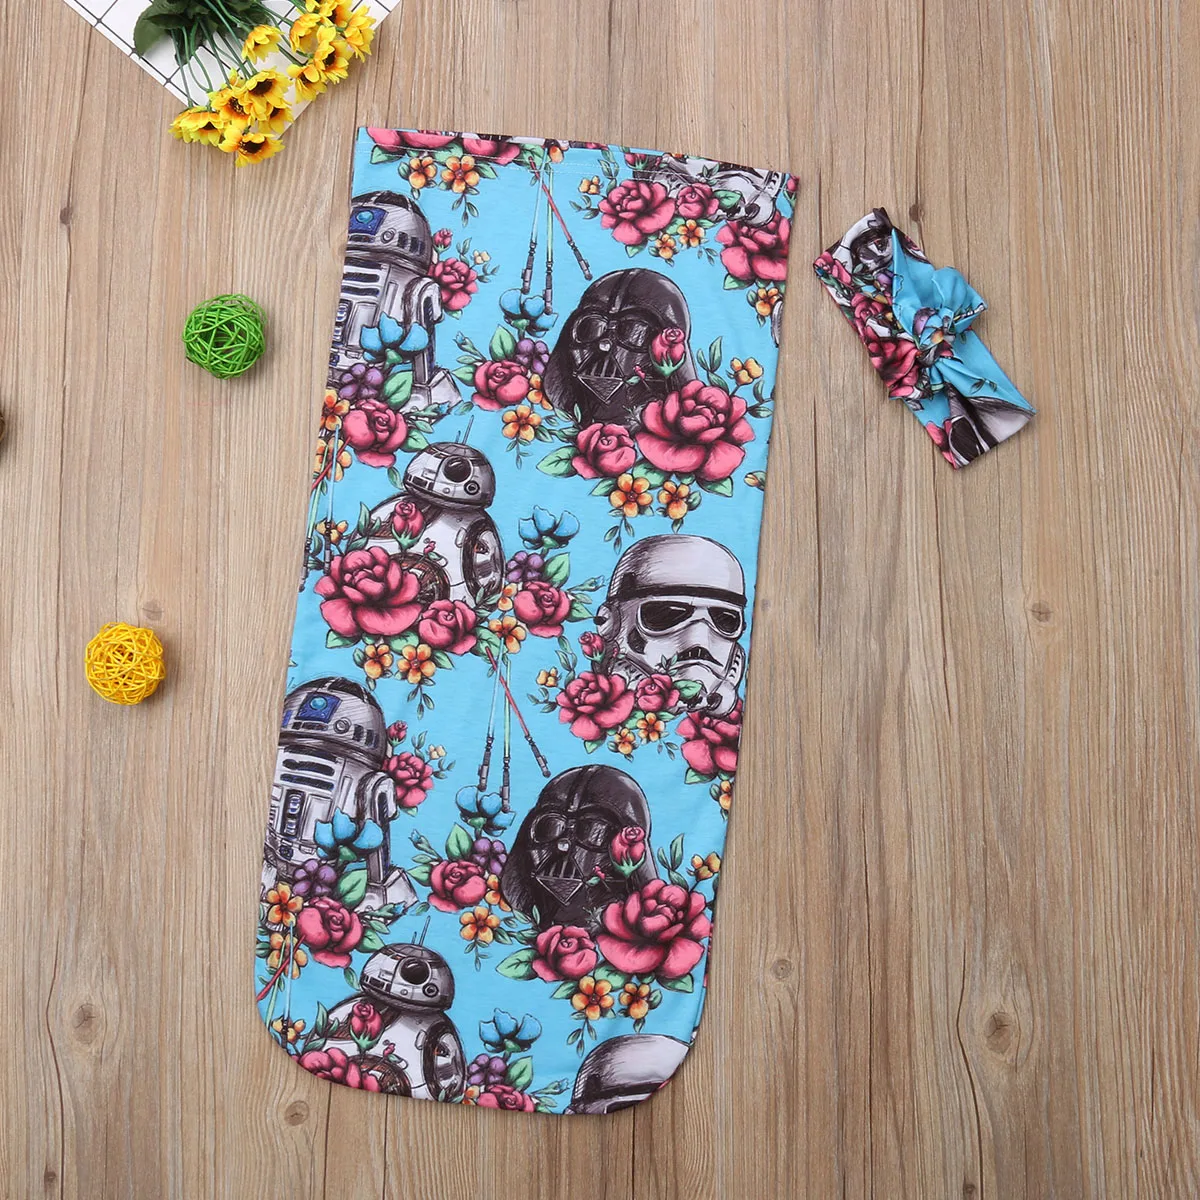 Pudcoco 2018 для новорожденных Детские спальные мешки Звездные войны пеленка с цветами мягкий спальный Одеяло Обёрточная бумага хлопка